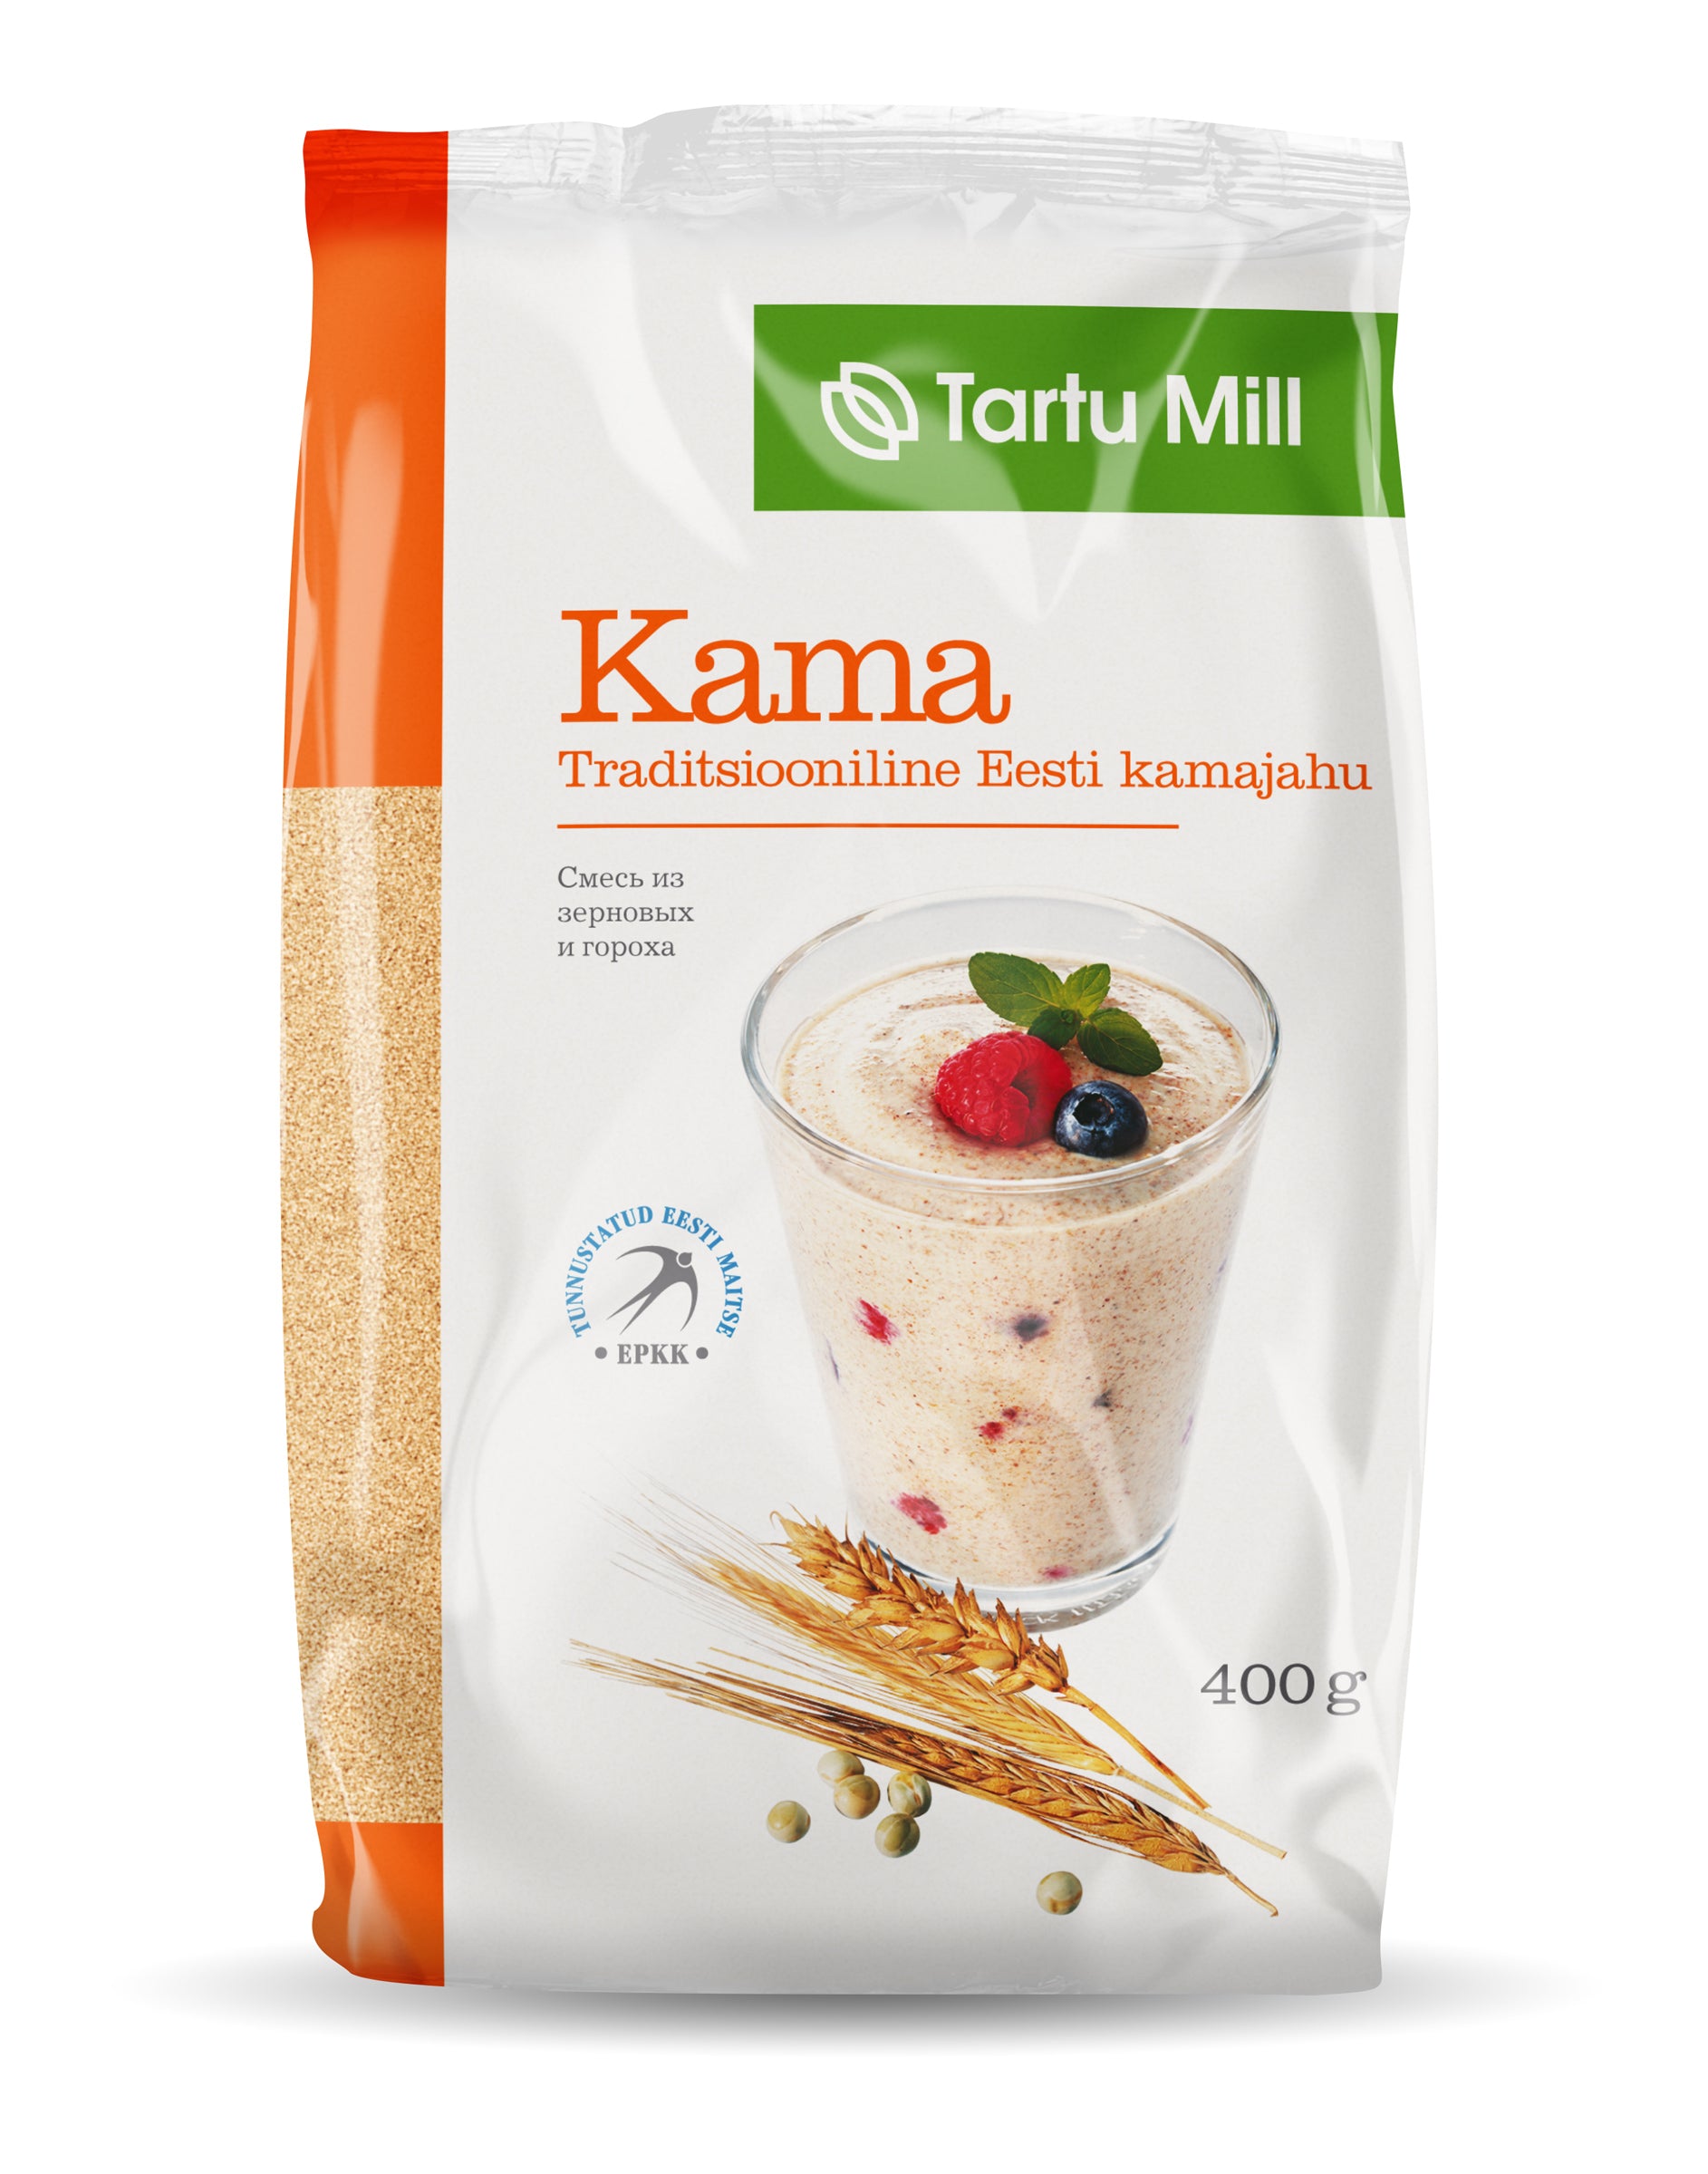 KAMA FLOUR 400g- Estonian Superfood!